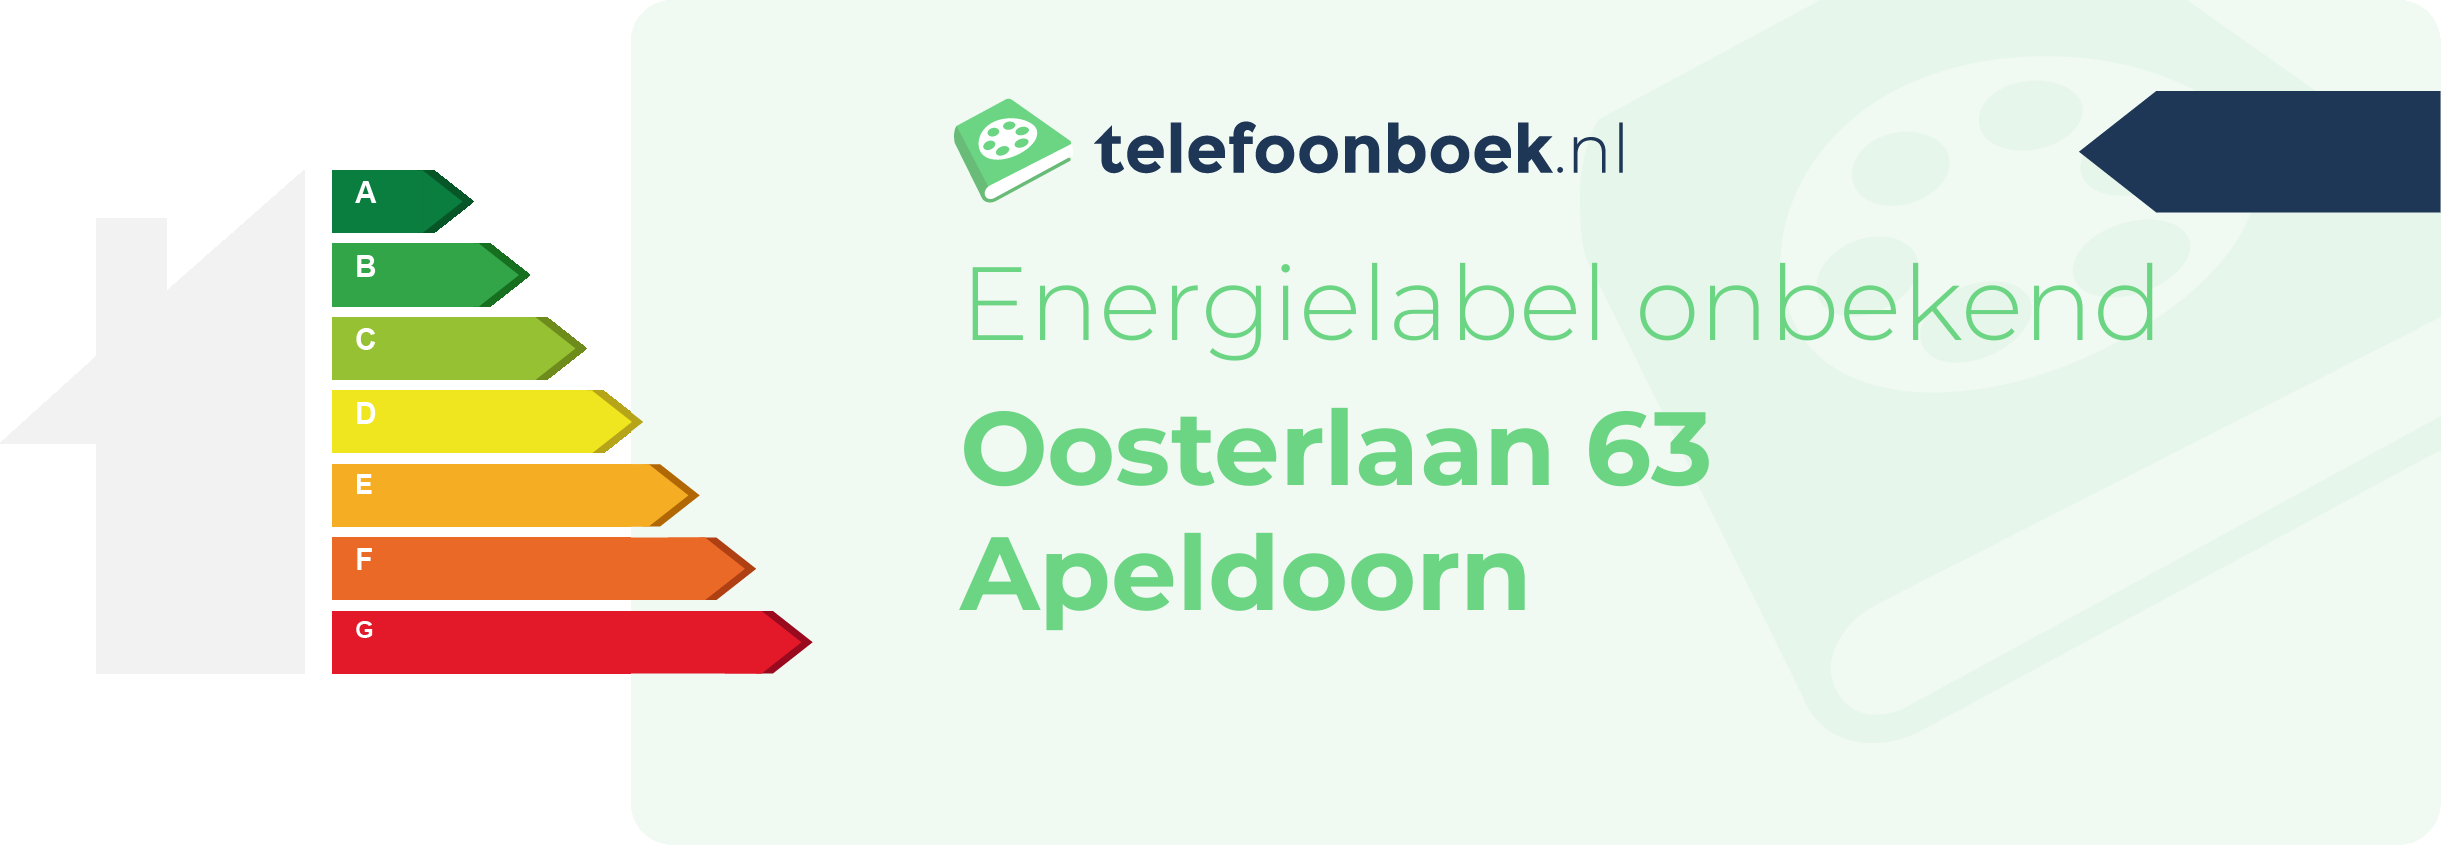 Energielabel Oosterlaan 63 Apeldoorn